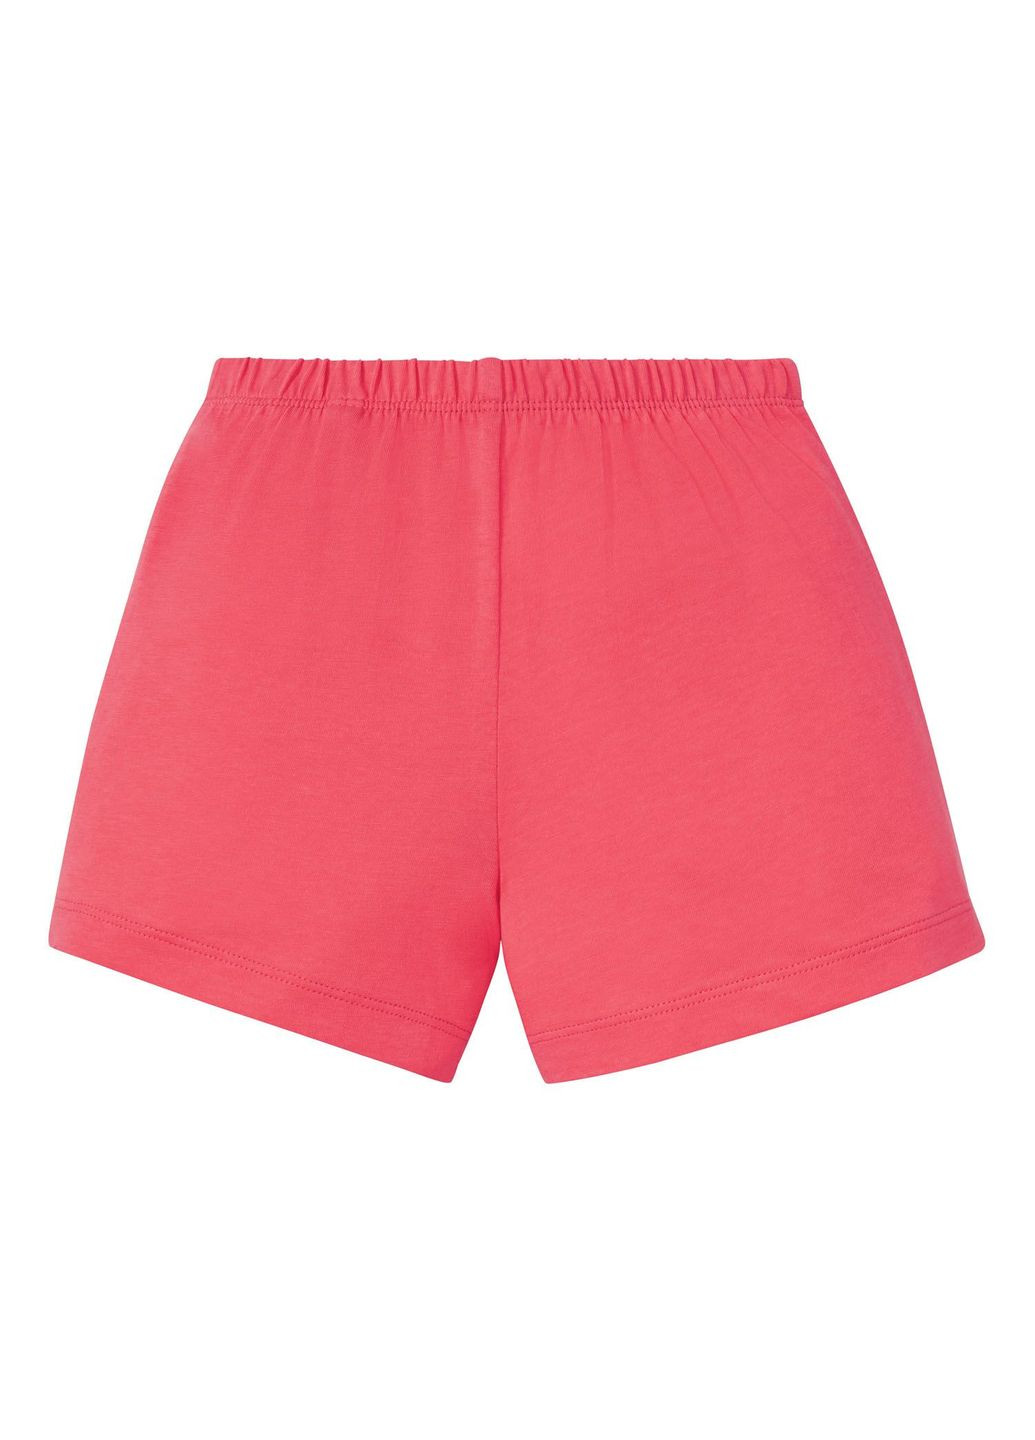 Коралловая демисезонная пижамные шорты хлопковые трикотажные для девочки 349605 Lupilu